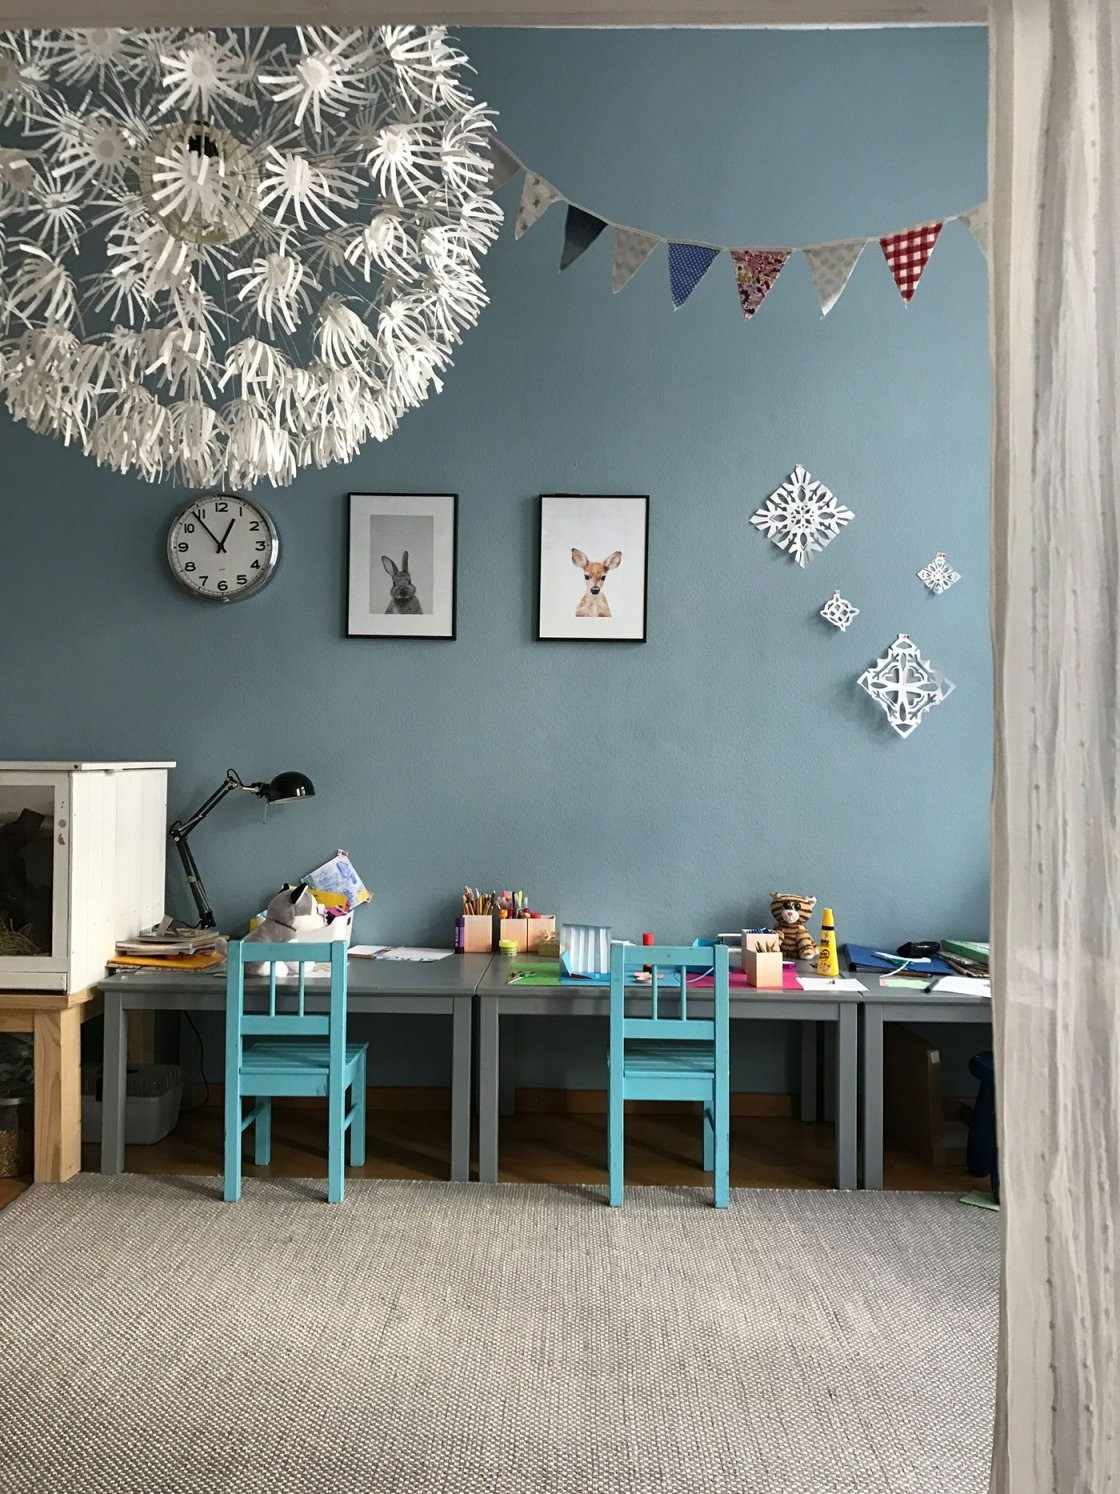 Die Besten Ideen Für Die Wandgestaltung Im Kinderzimmer von Wandgestaltung Kinderzimmer Selber Machen Bild